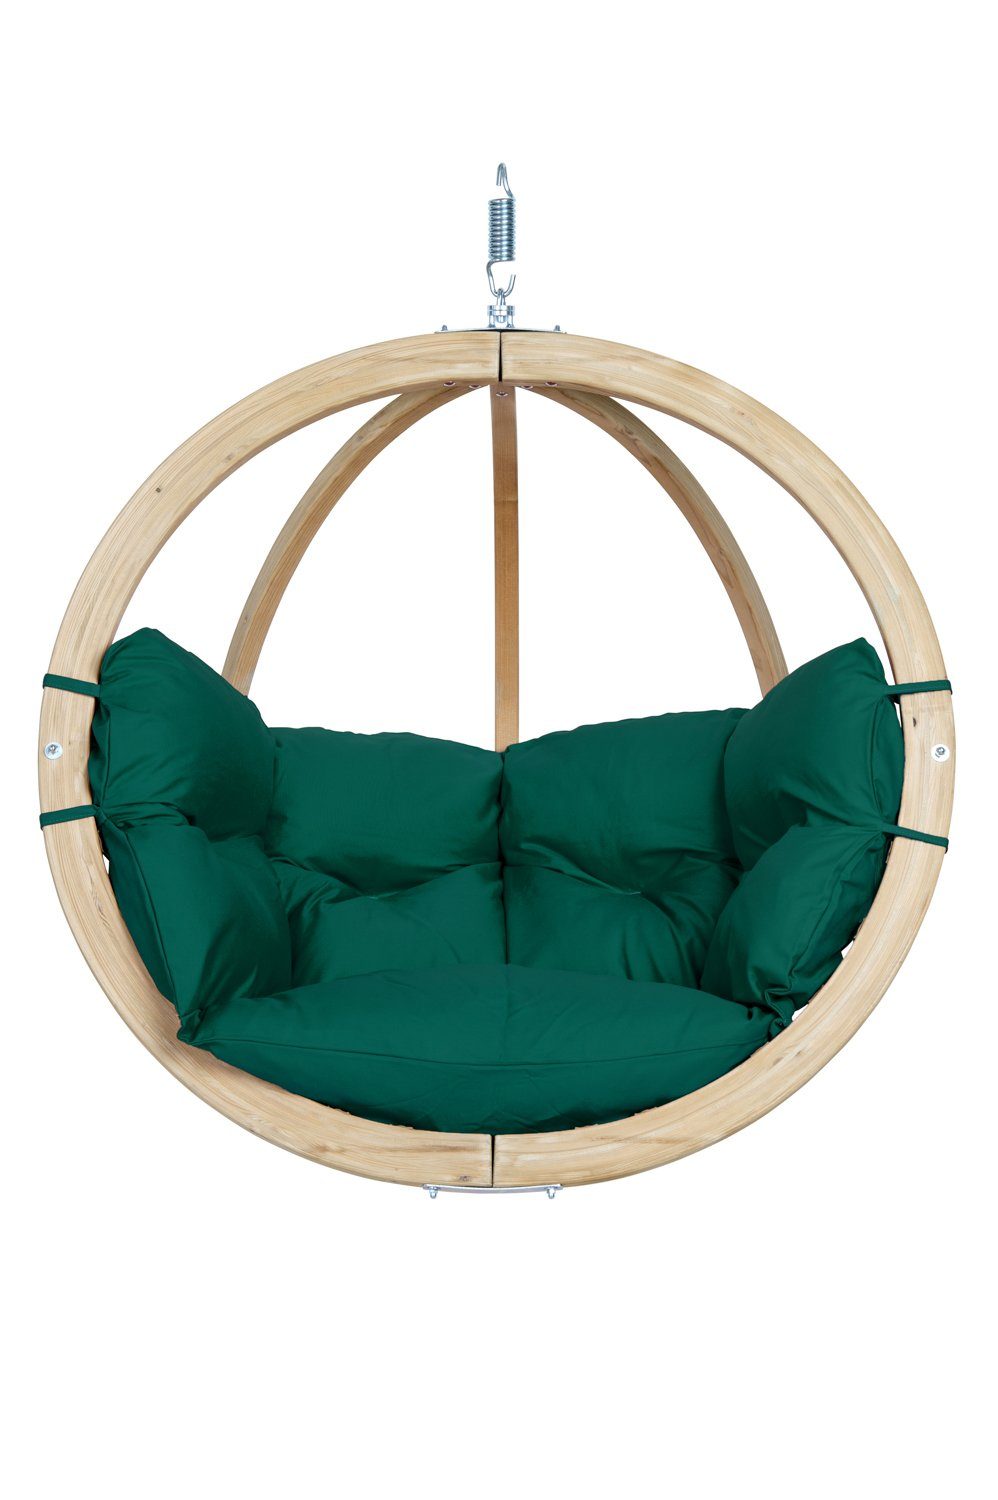 Amazonas Hängesessel Globo Chair - Ein moderner In- und Outdoor Hängesessel Verde